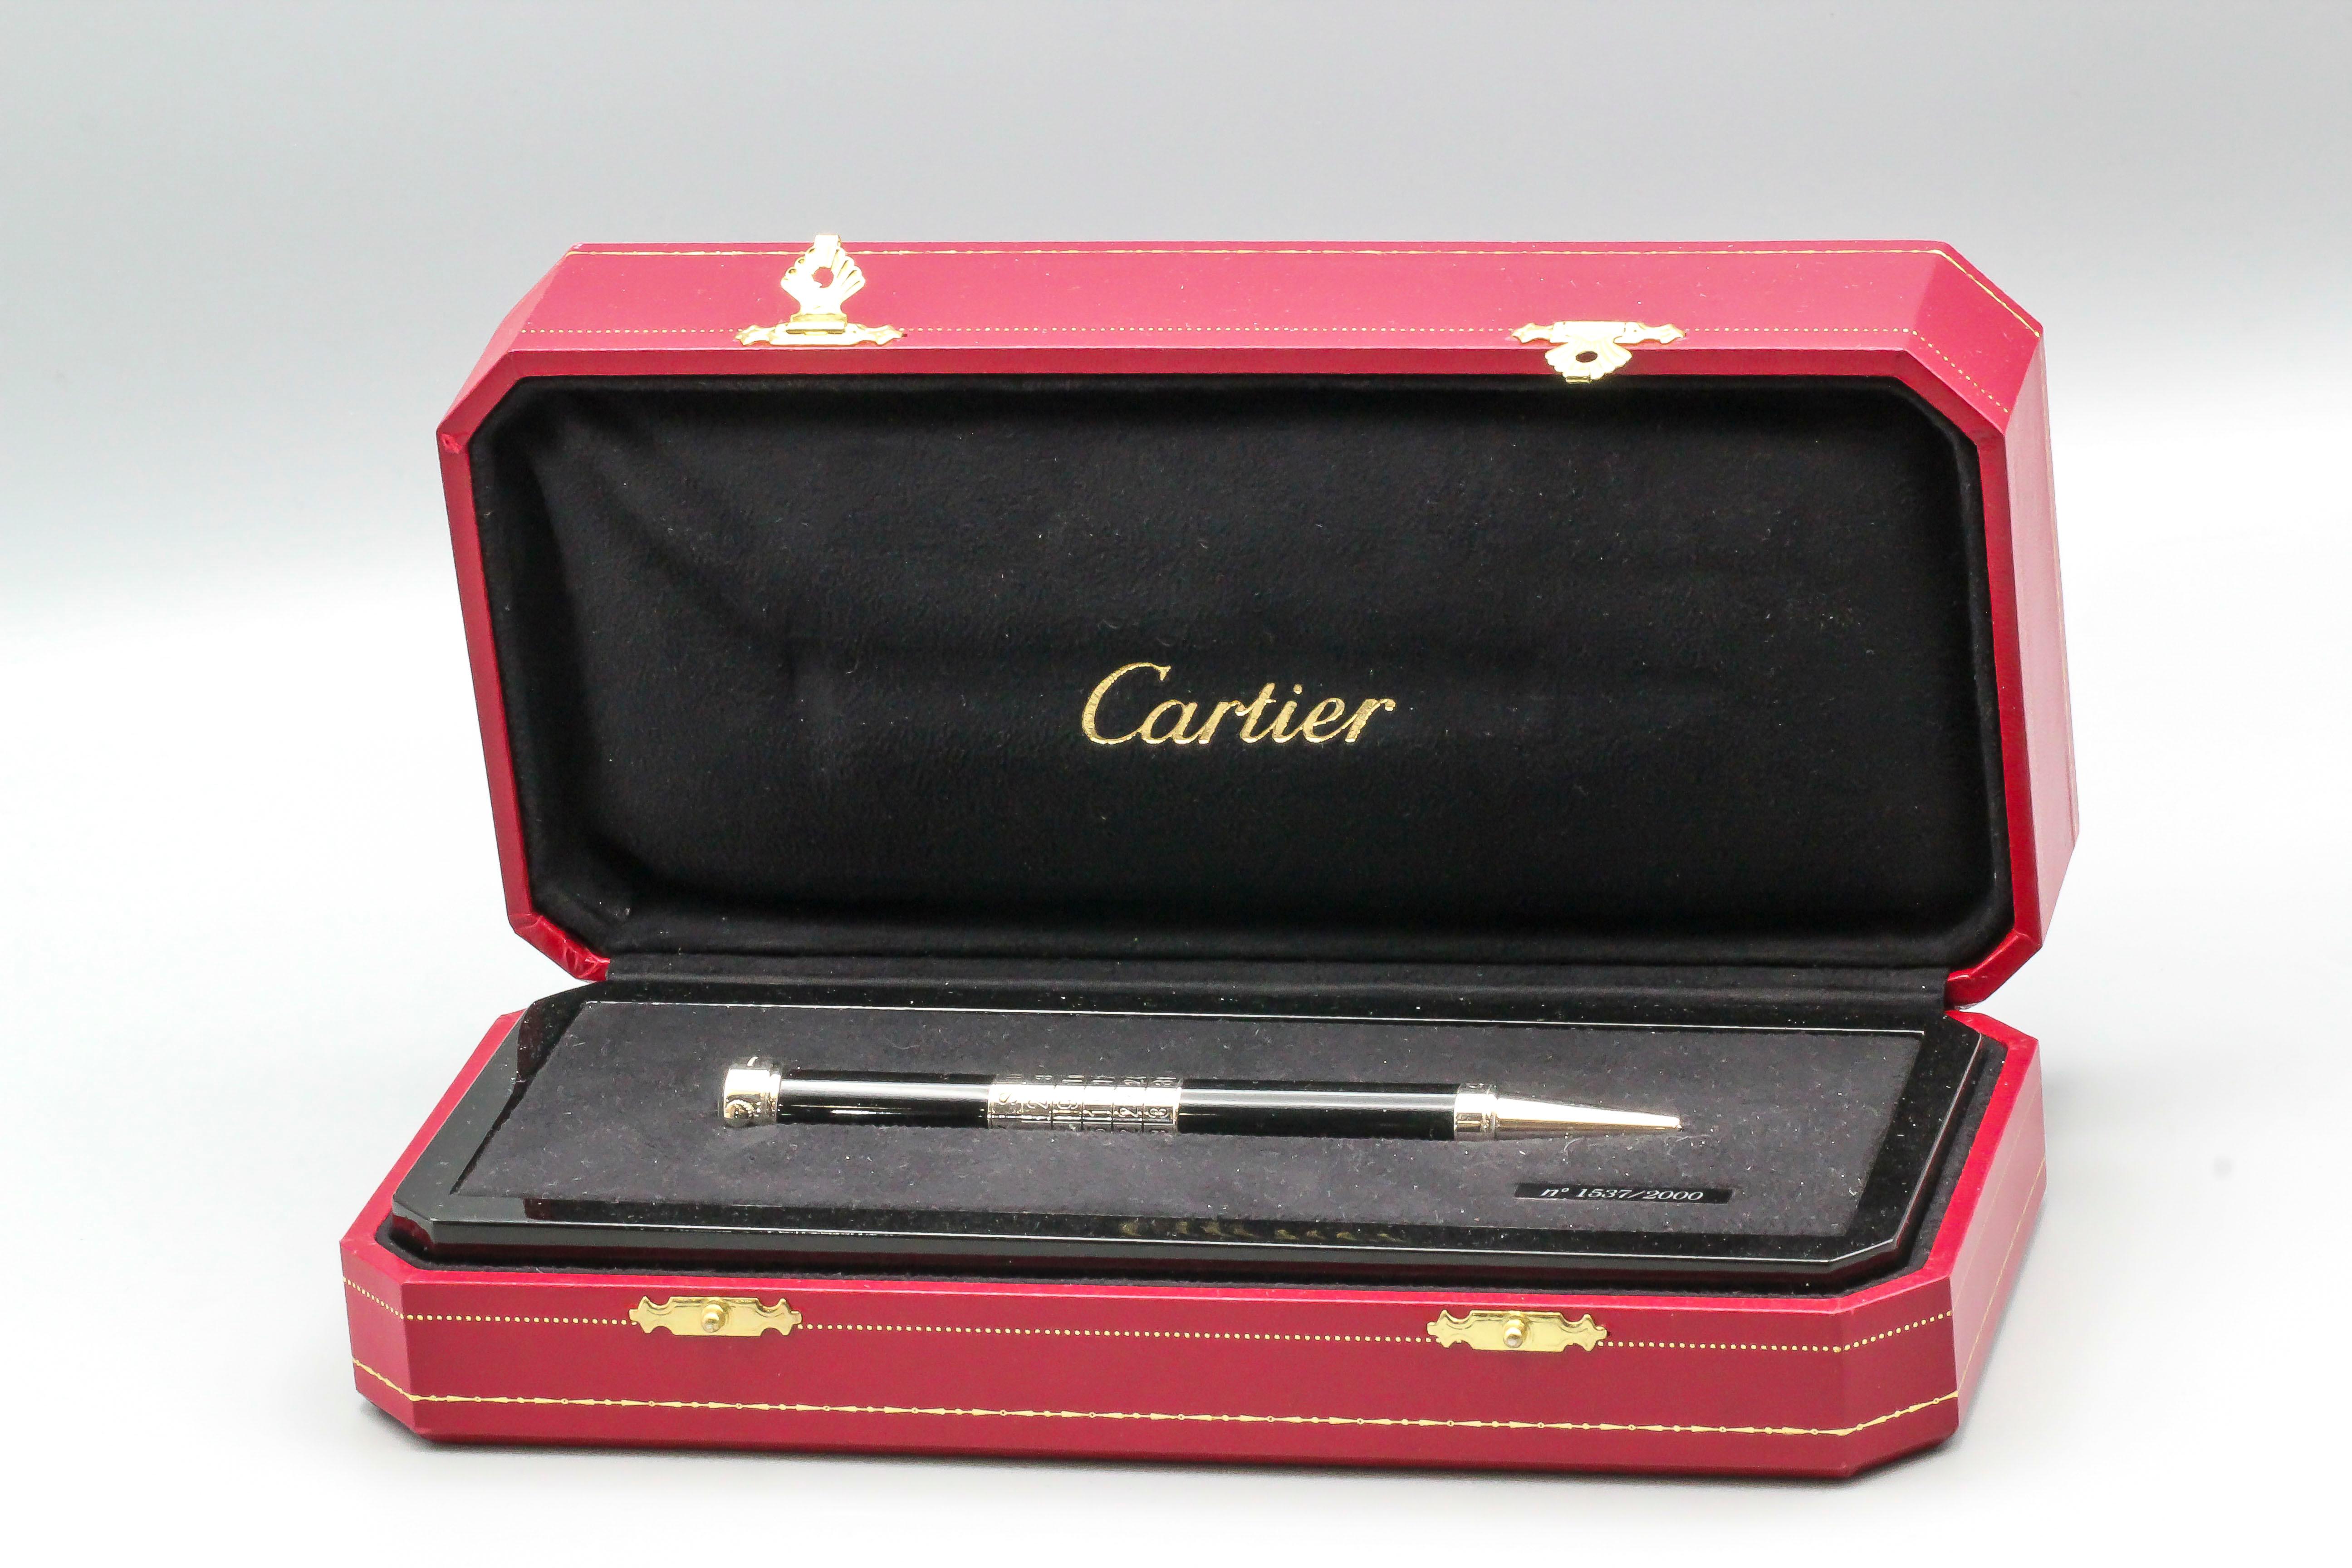 cartier watch pen